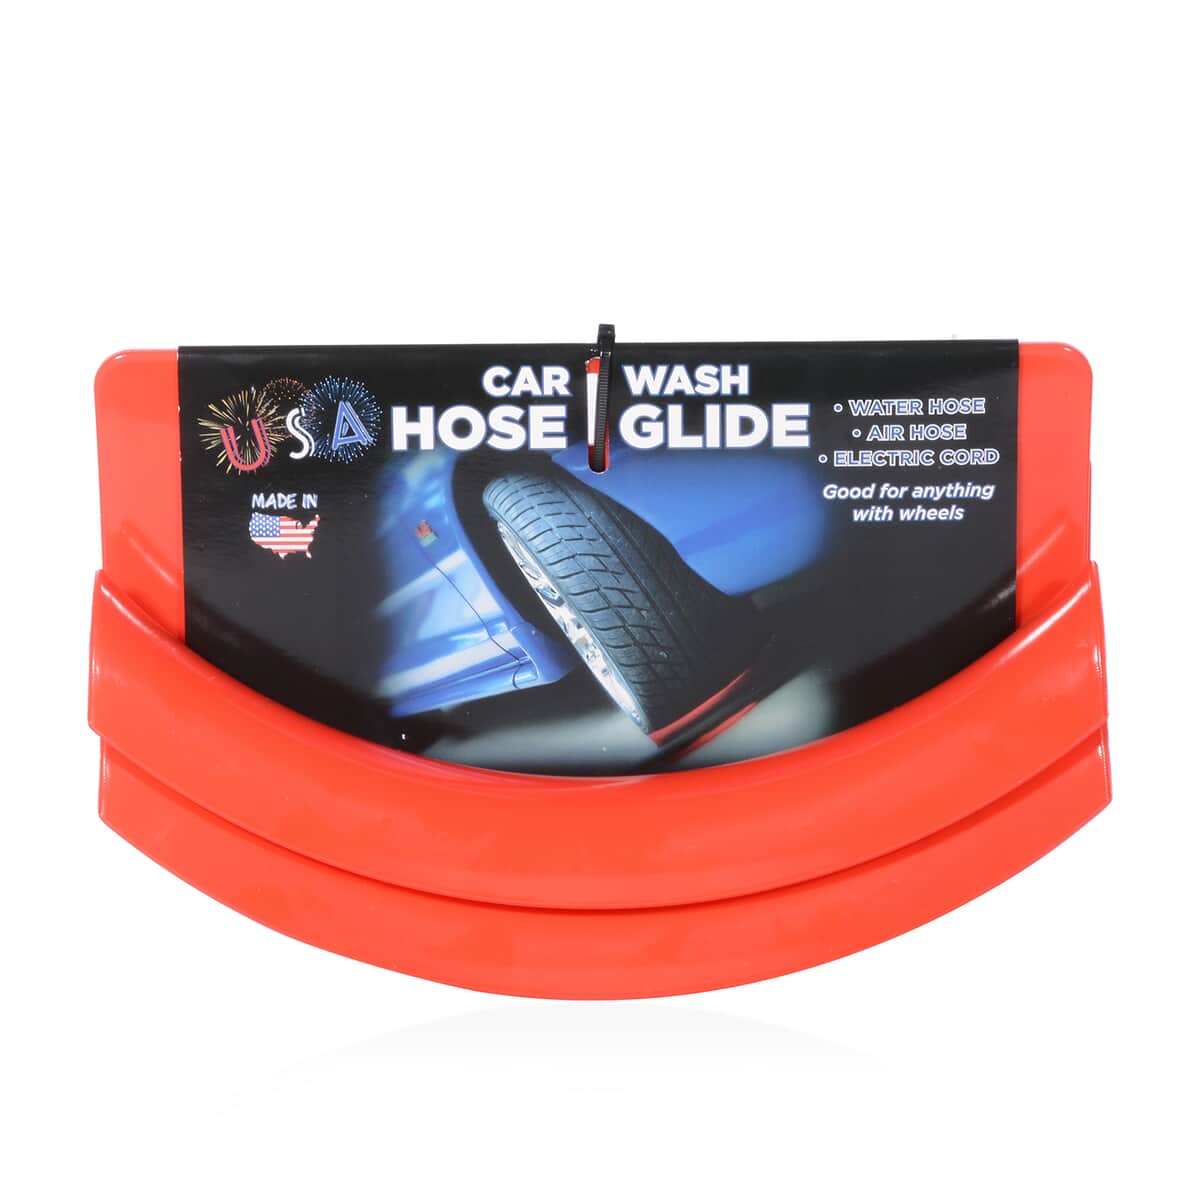 Buy Set of 2 USA Hose Glider (Car Wash) at ShopLC.